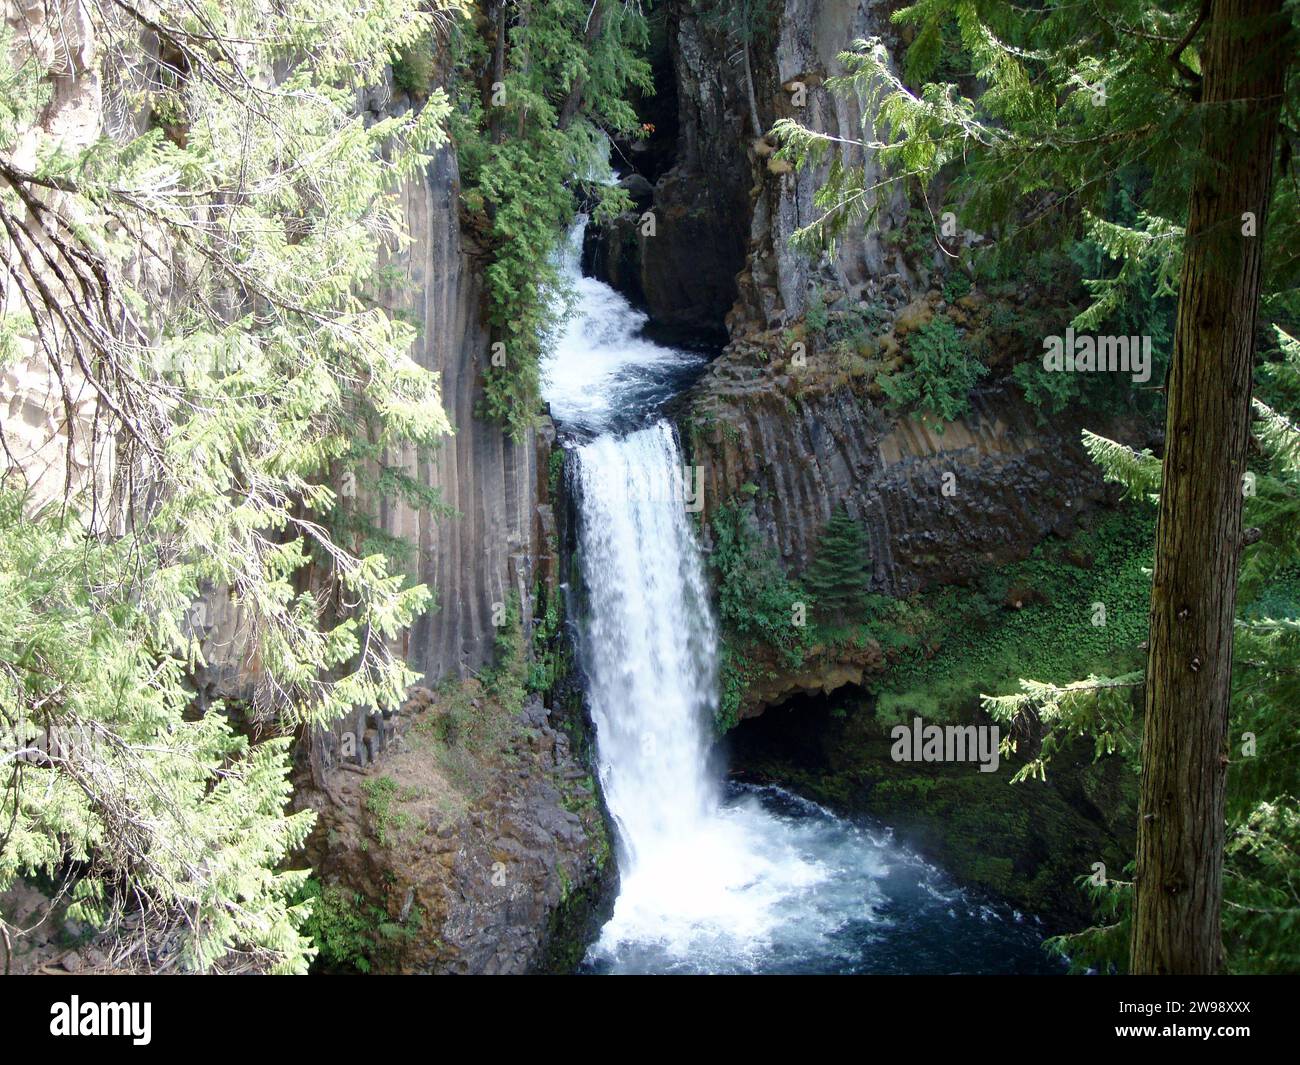 La pittoresca cascata dell'Oregon che scende lungo una gola rocciosa circondata da una vegetazione lussureggiante. Foto Stock